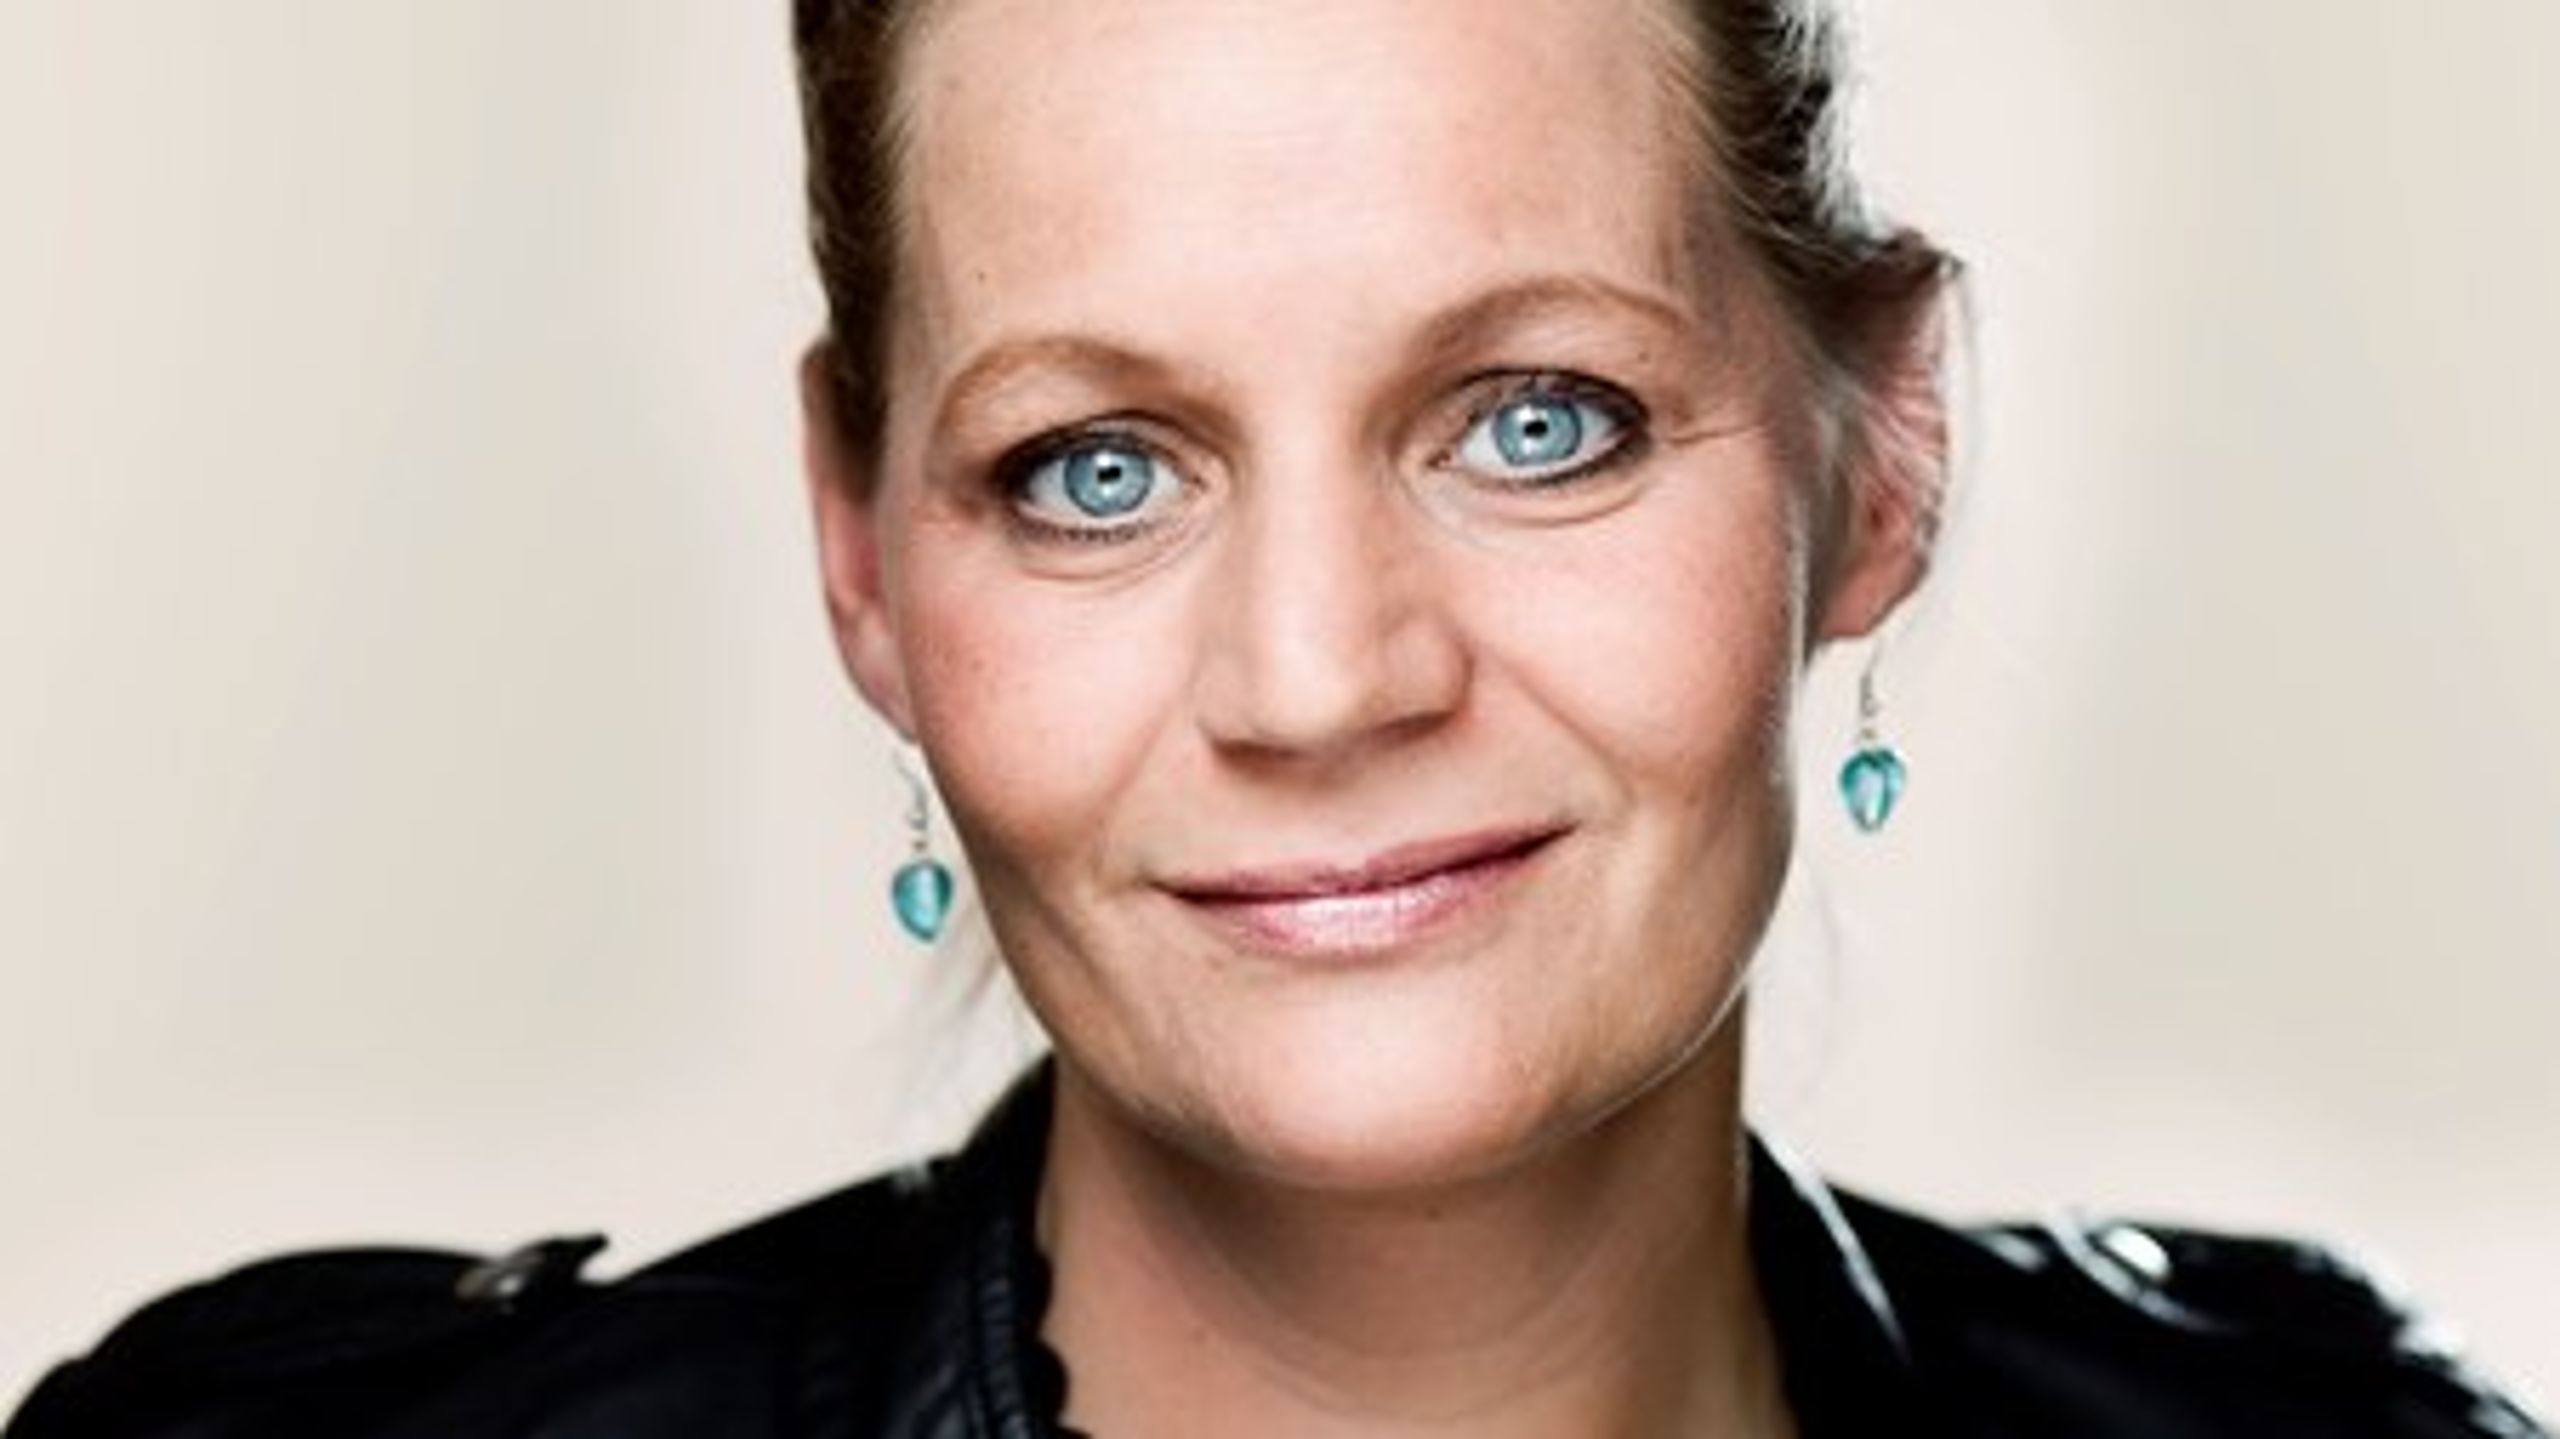 Ifølge Dansk Folkepartis boligordfører, Karina Adsbøl, er ting som fejlagtige ejendomsvurderinger og usikkerhed omkring boligjob-ordningen med til at skabe en uhensigtsmæssig utryghed og forvirring blandt danskerne.